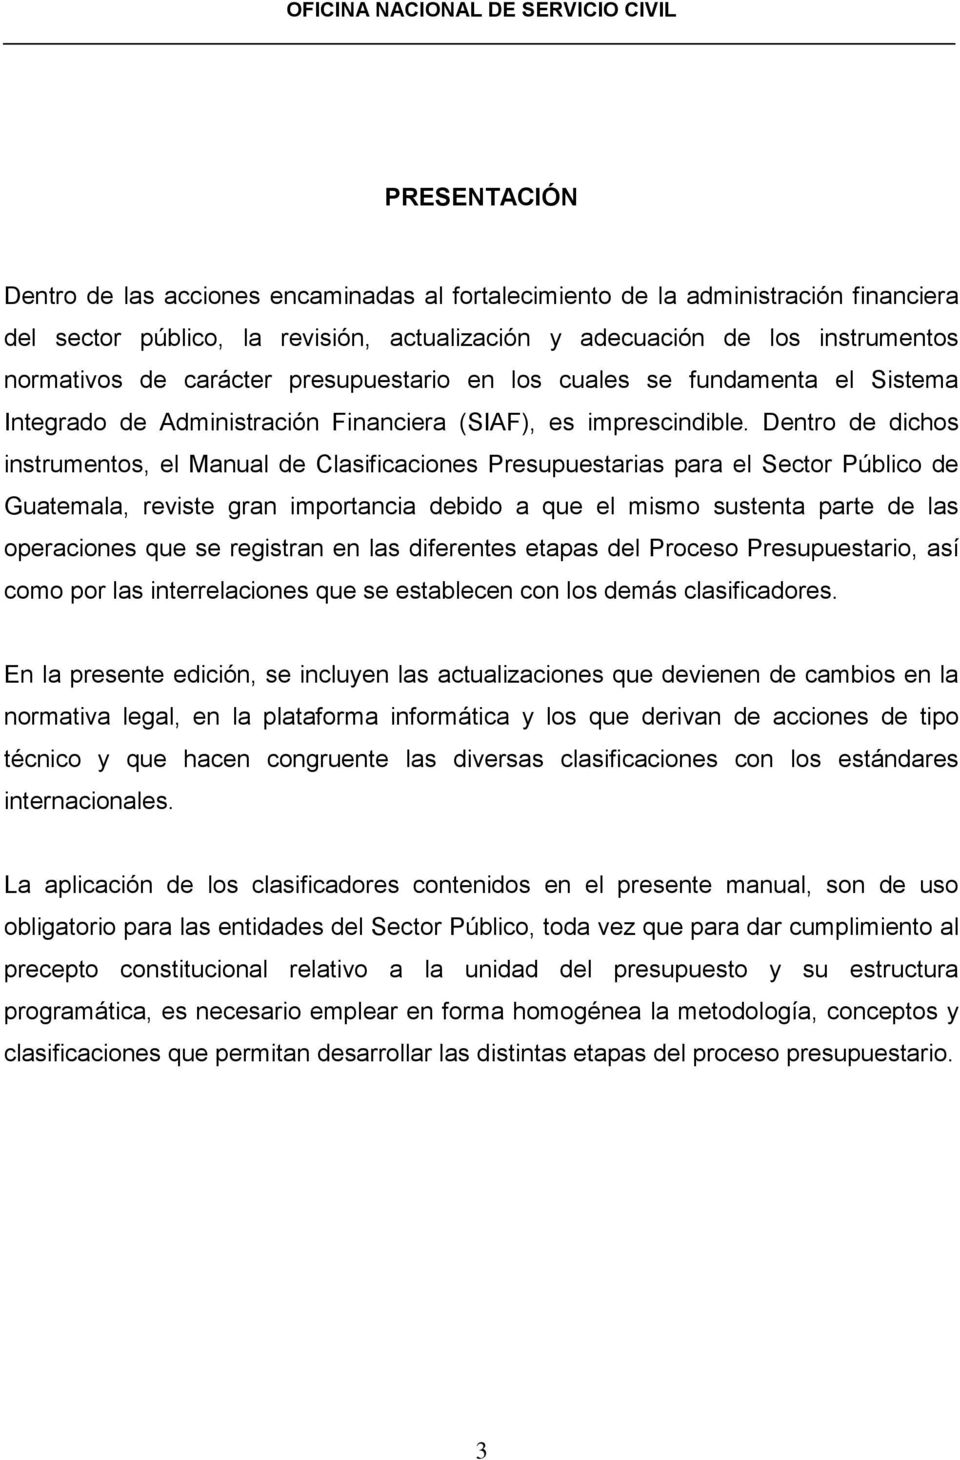 Dentro de dichos instrumentos, el Manual de Clasificaciones Presupuestarias para el Sector Público de Guatemala, reviste gran importancia debido a que el mismo sustenta parte de las operaciones que